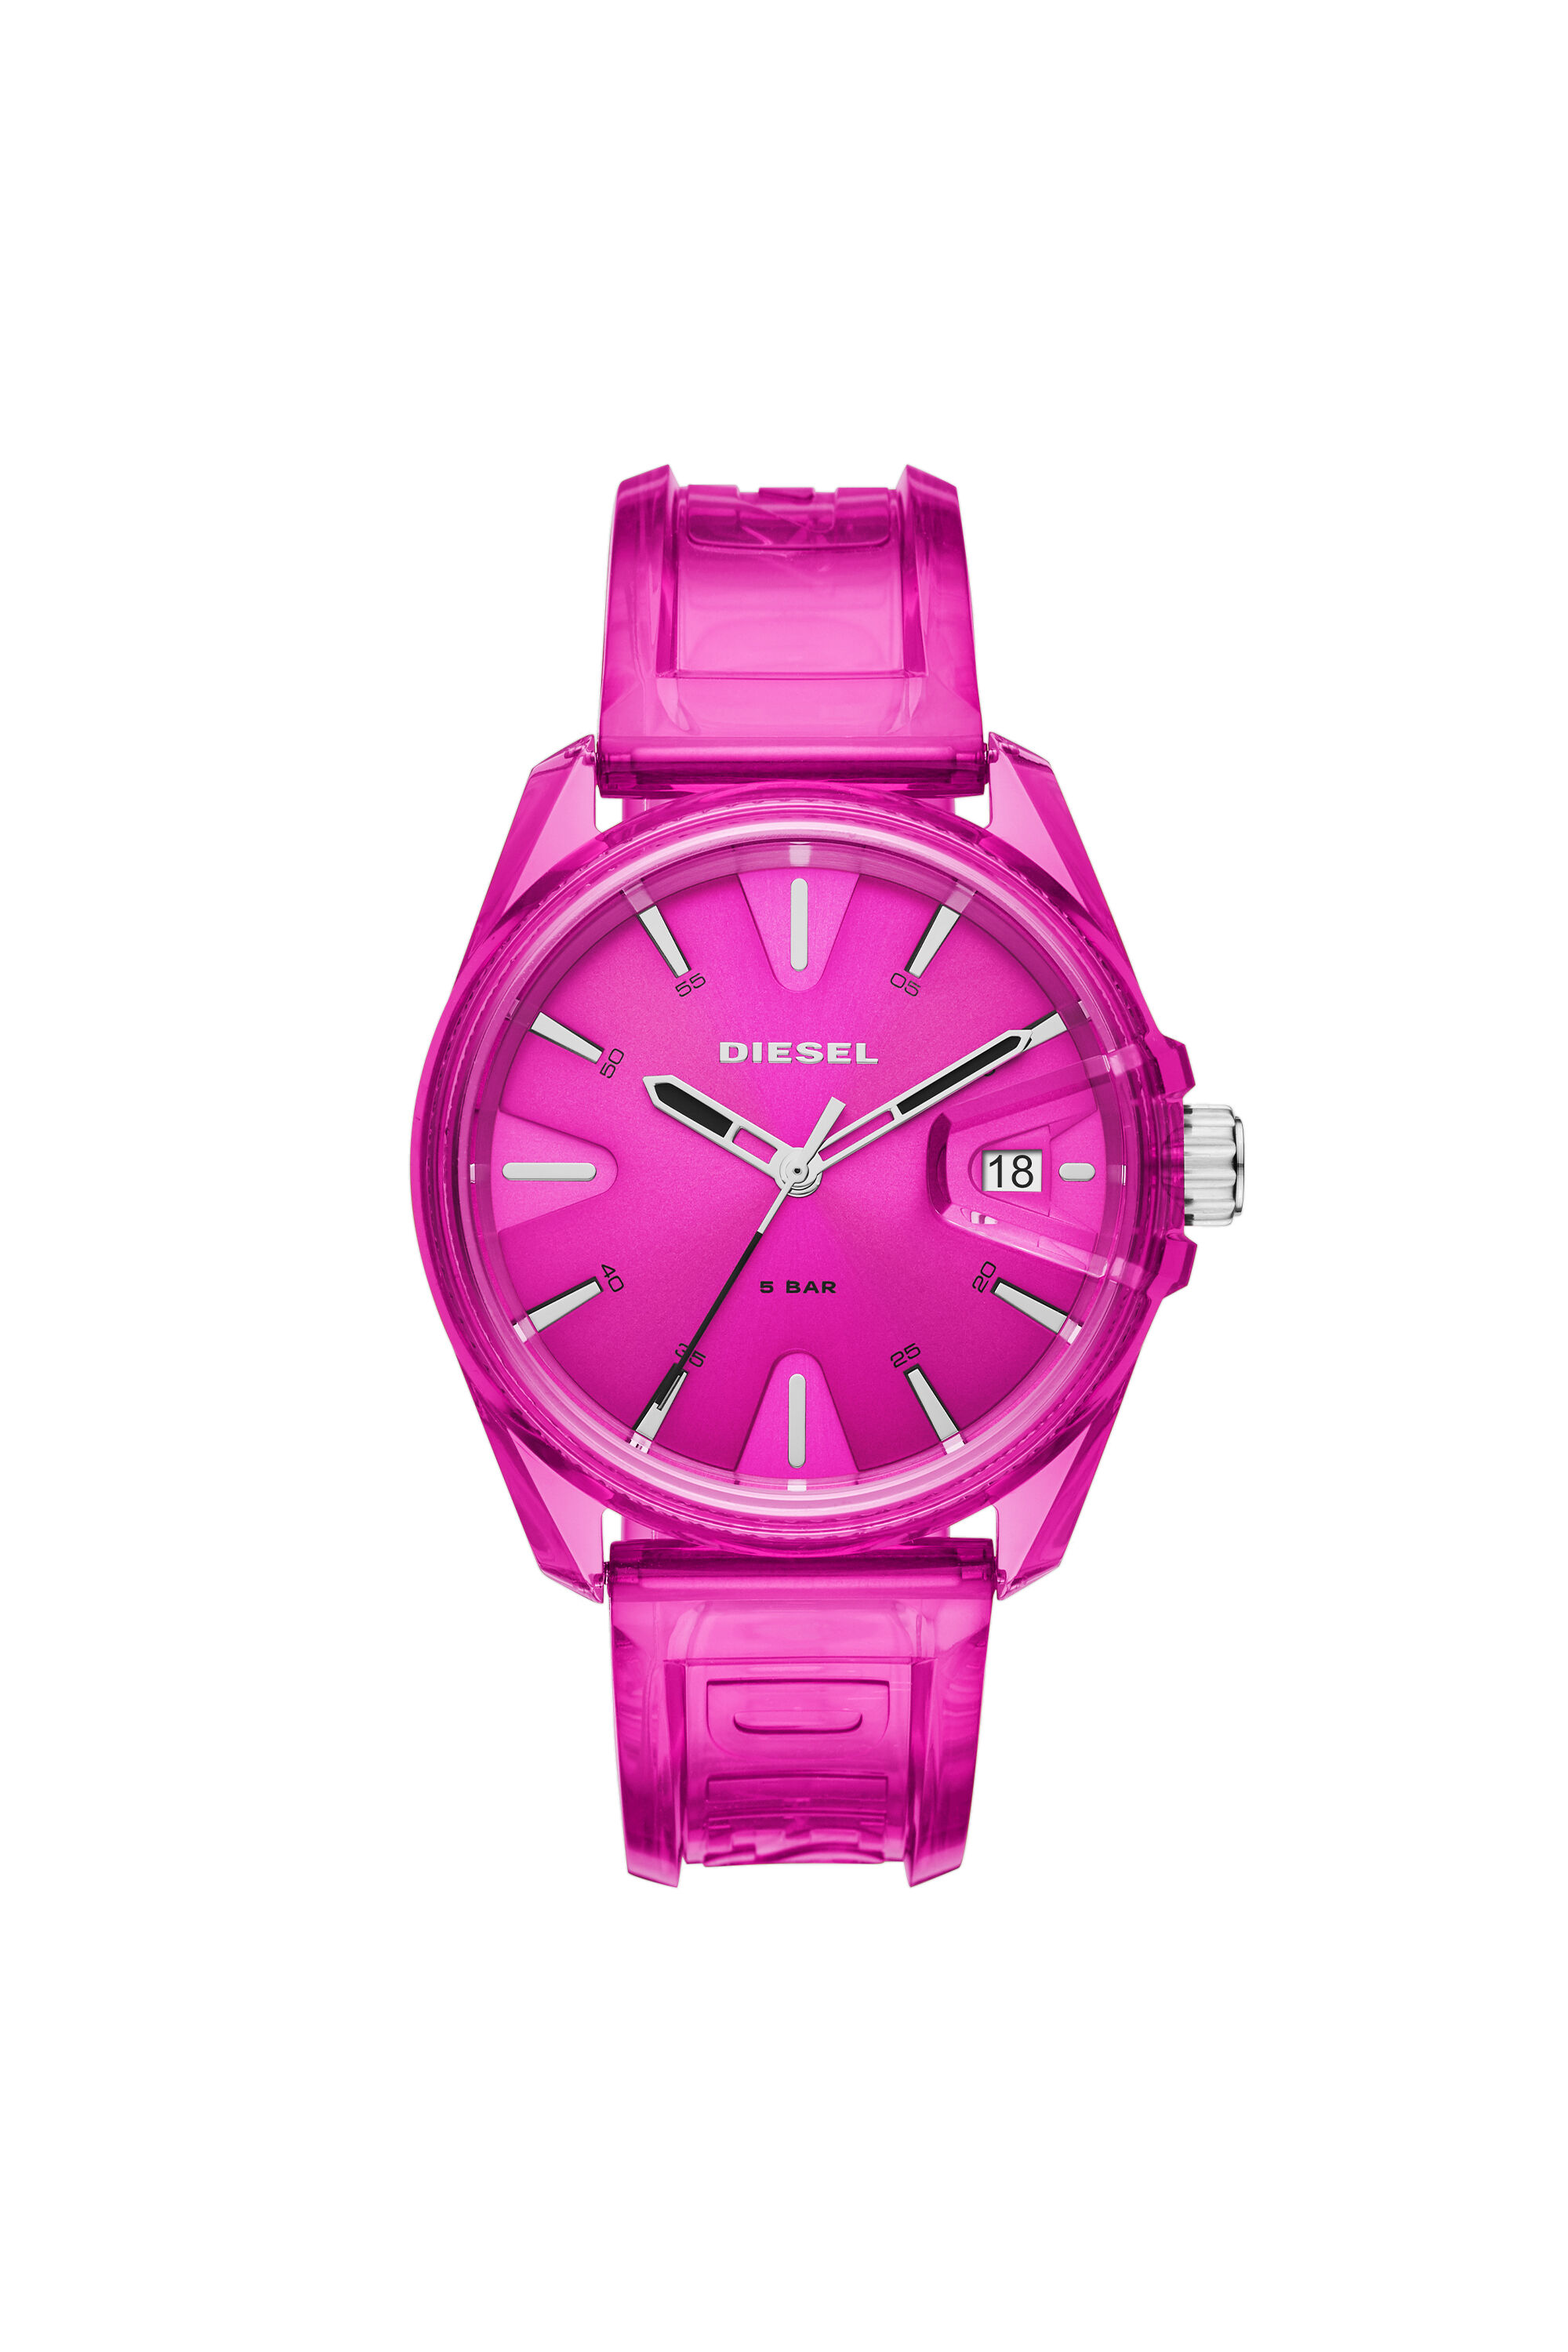 Diesel - DZ1929, Unisex MS9 three-hand pink transparent watch in ピンク - Image 1